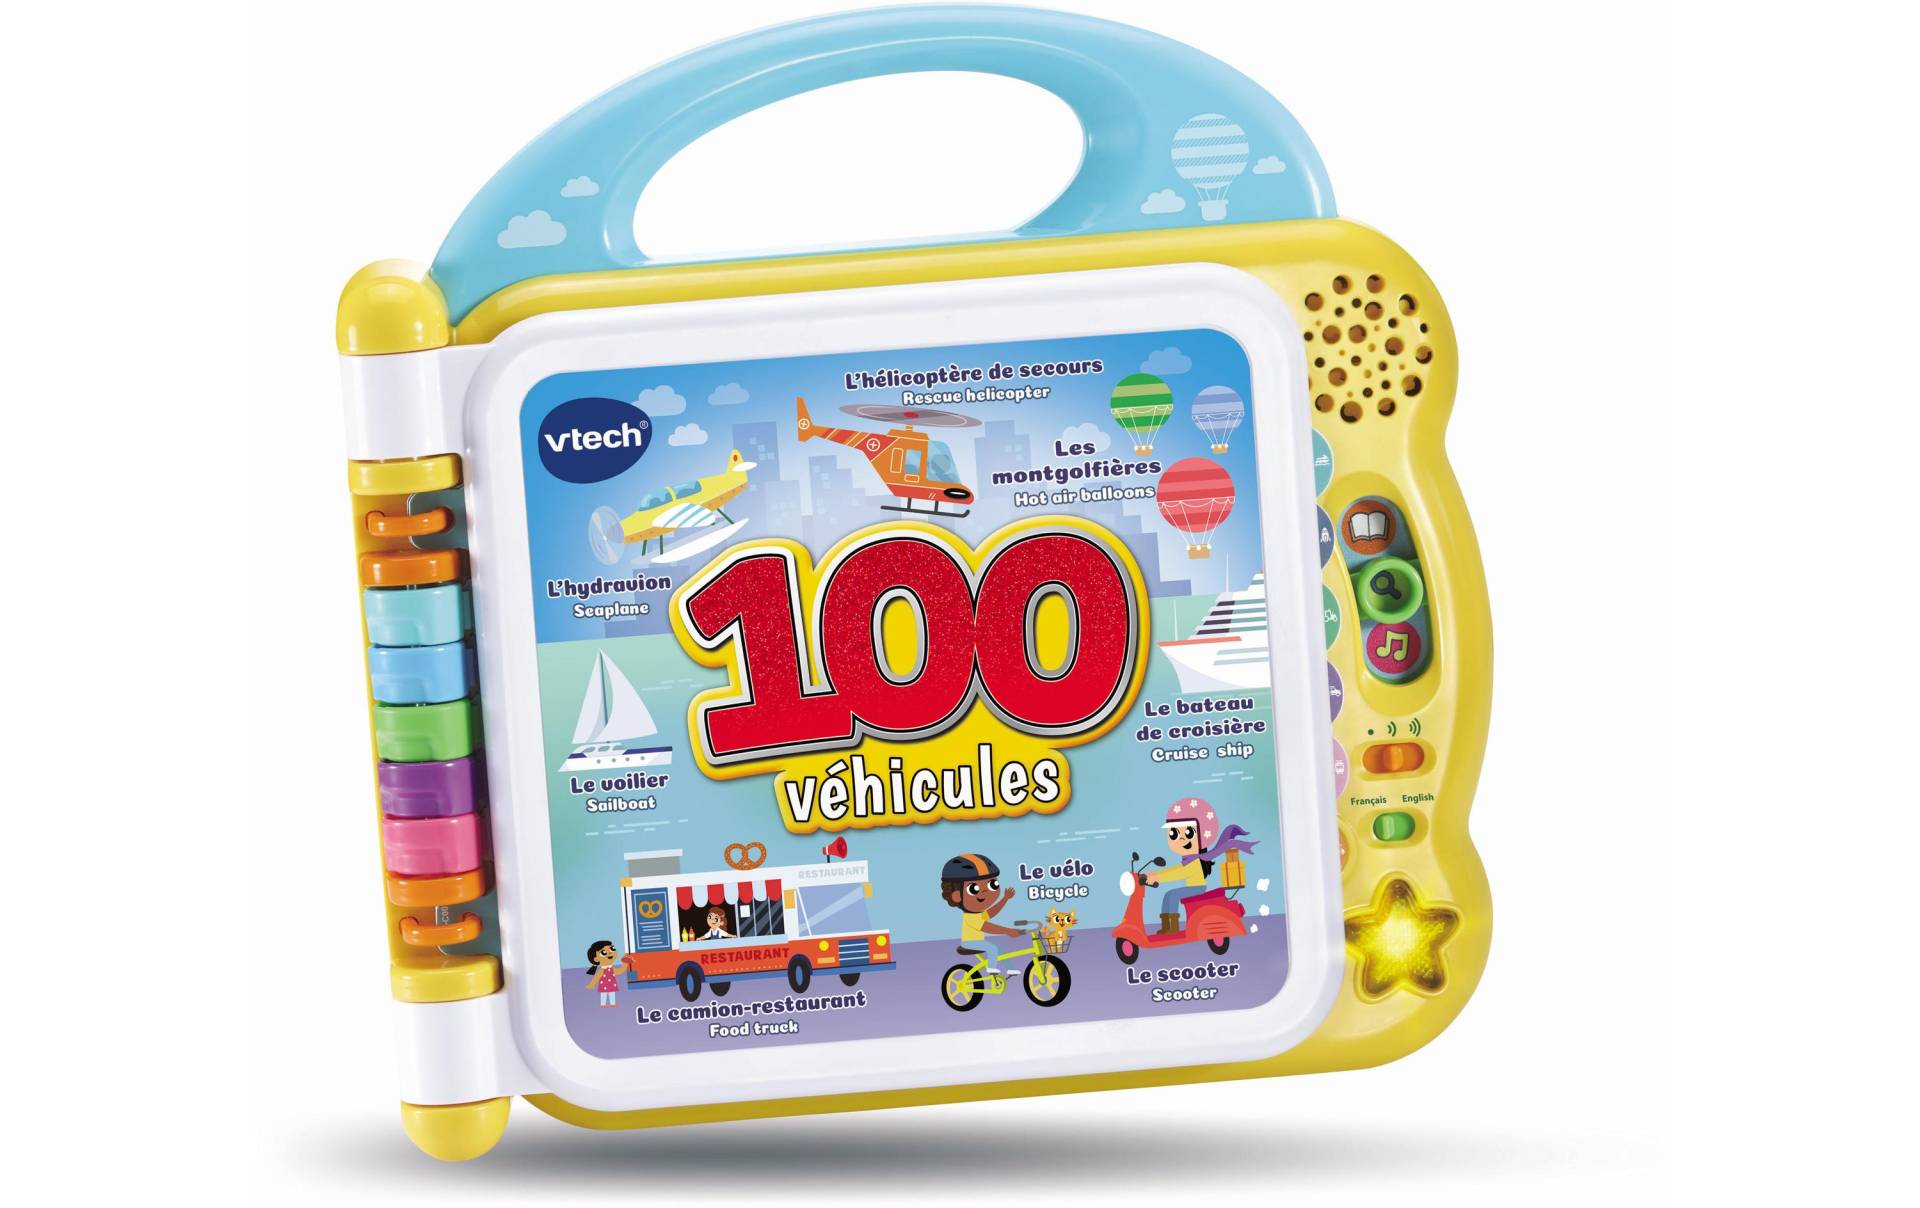 Vtech® Lernspielzeug »bilingue - 100 véhicules« von Vtech®